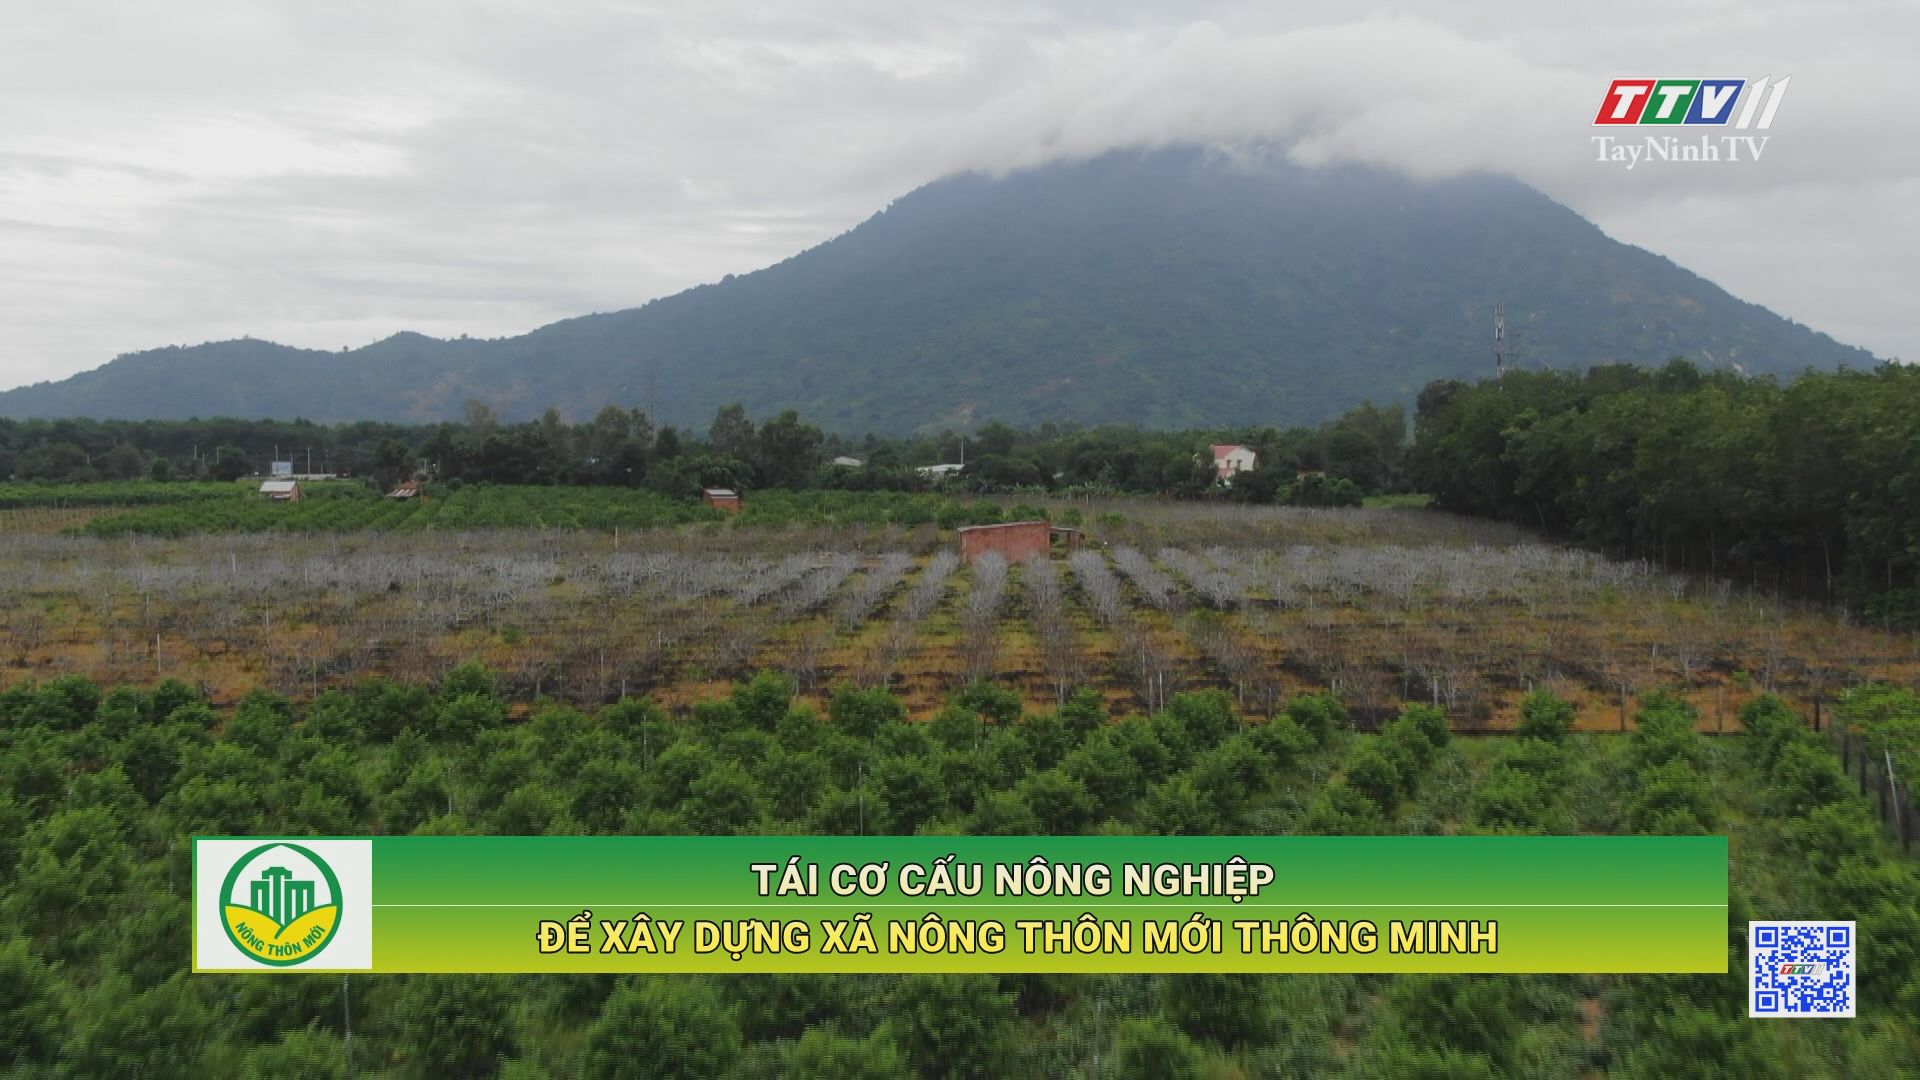 Tái cơ cấu nông nghiệp để xây dựng xã nông thôn mới thông minh | TayNinhTV